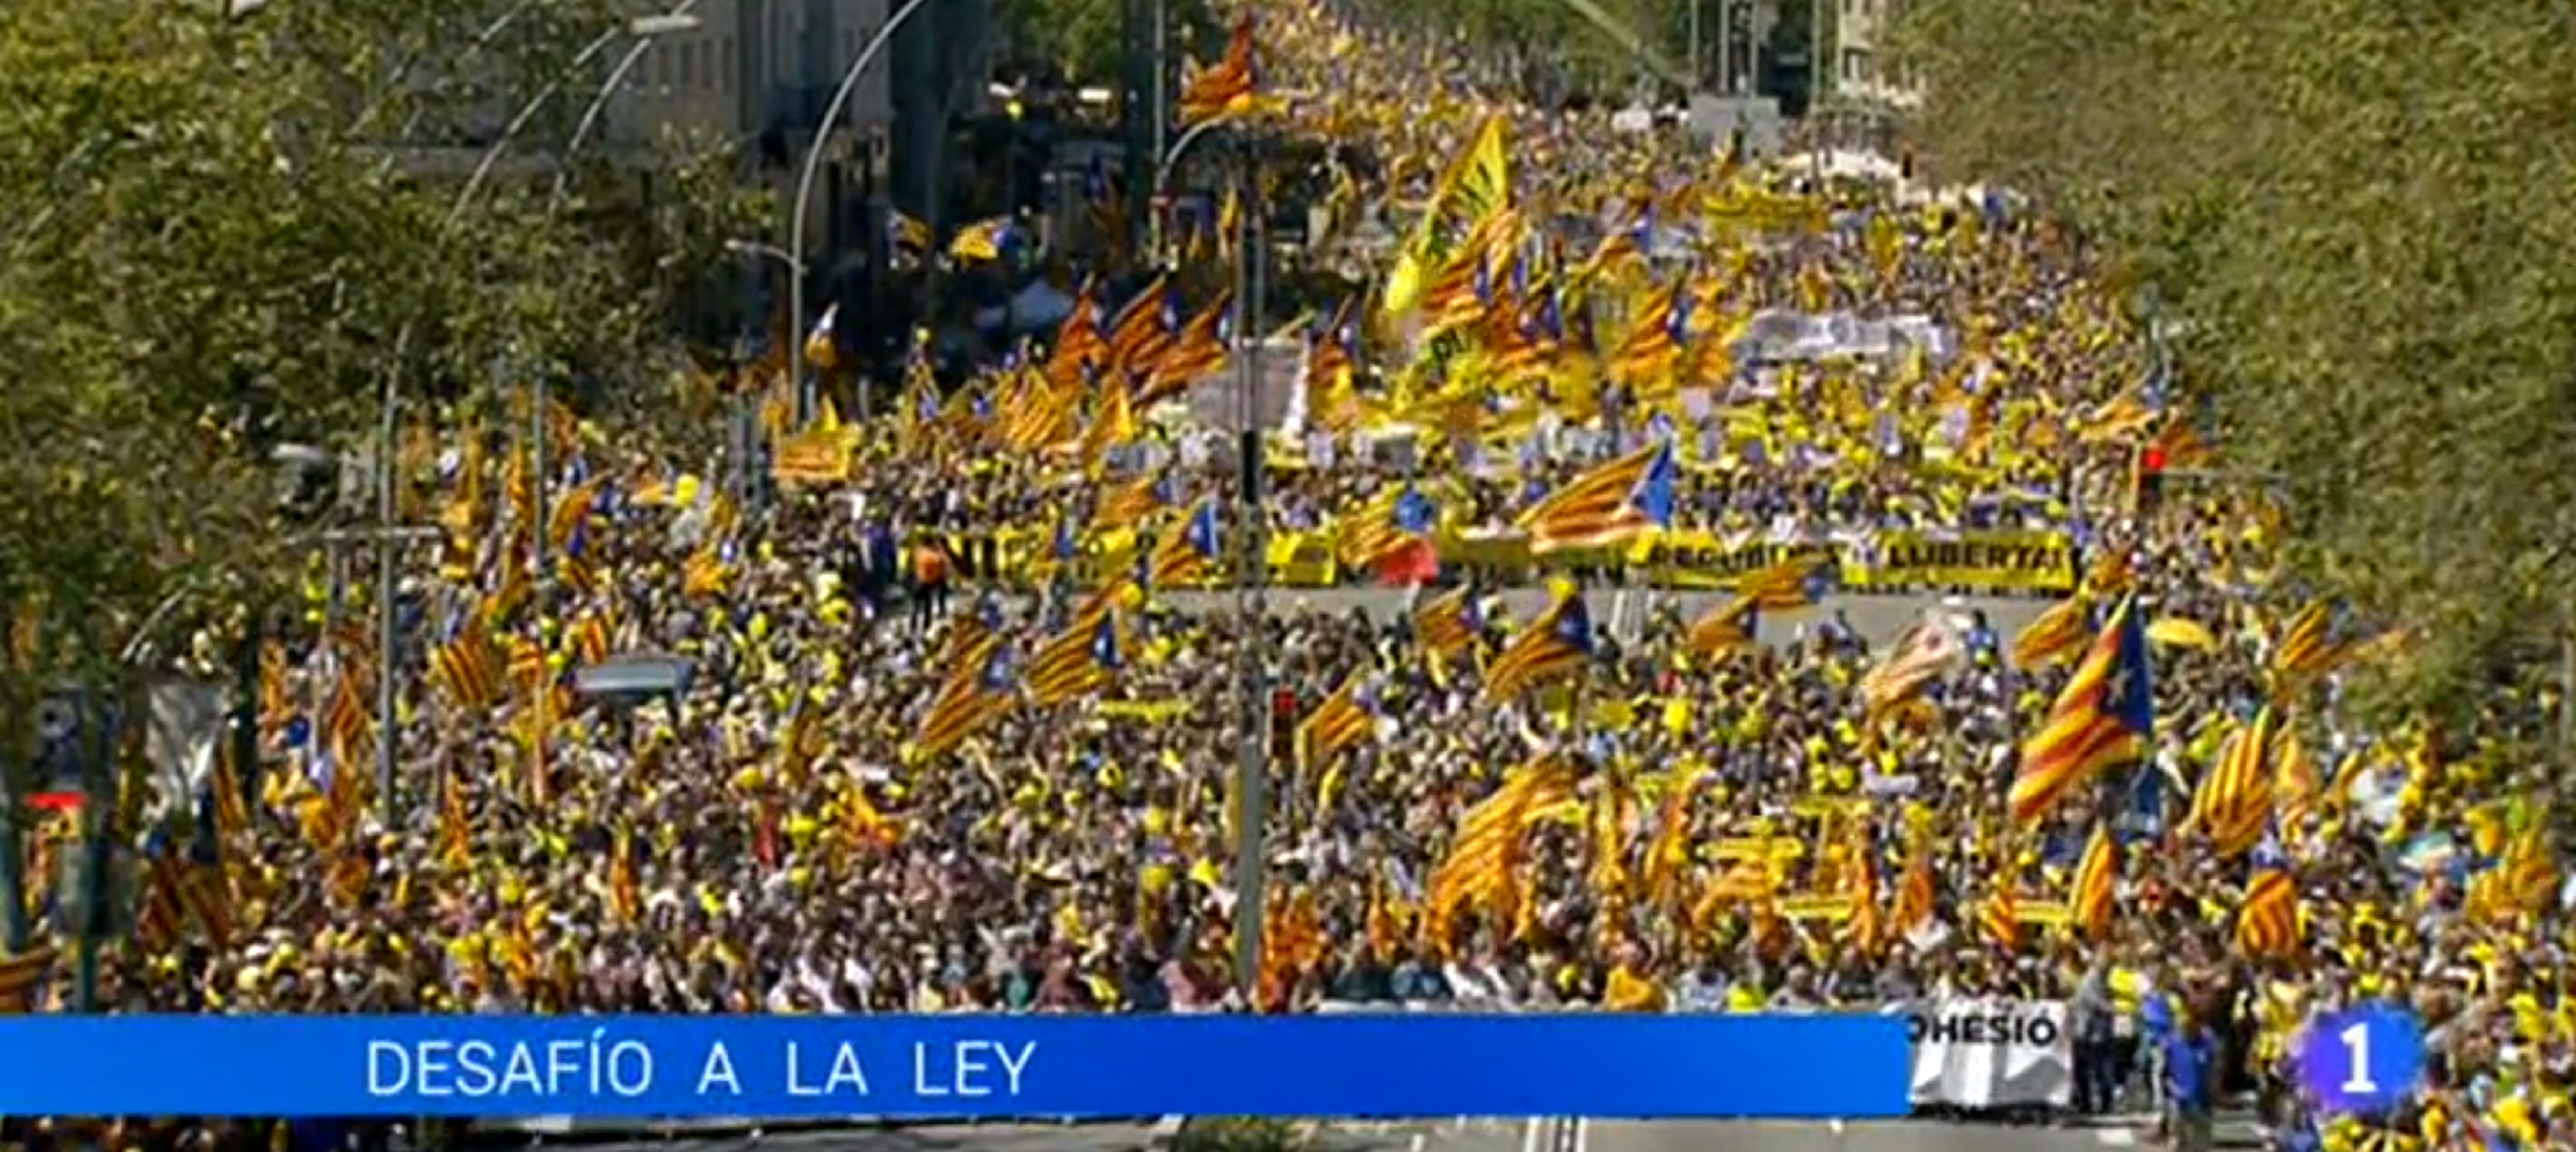 TVE relega la manifestació pels presos polítics i li diu "Desafío a la ley"